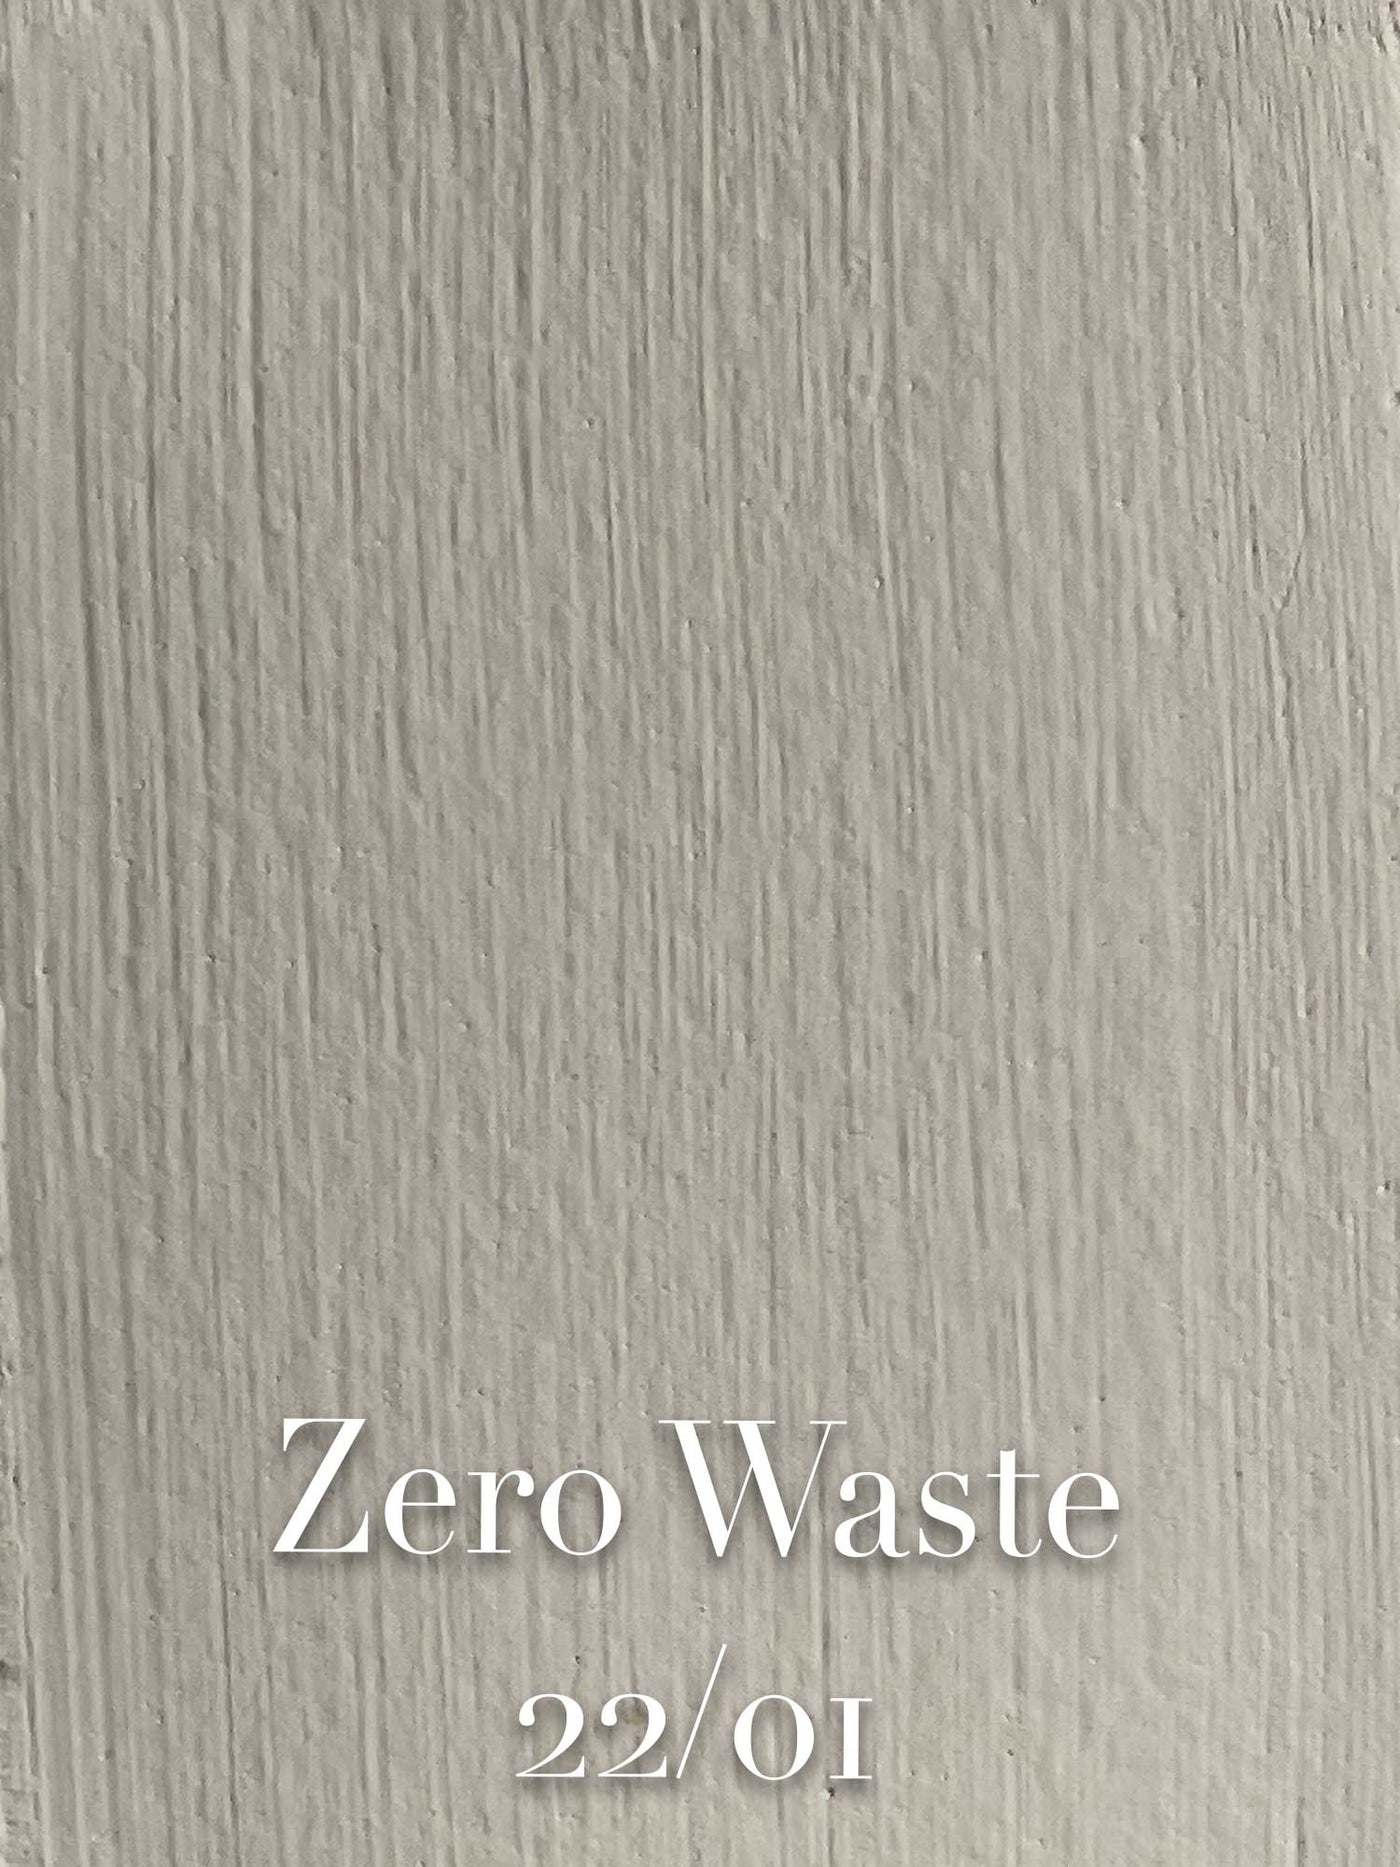 Zero Waste 22/01